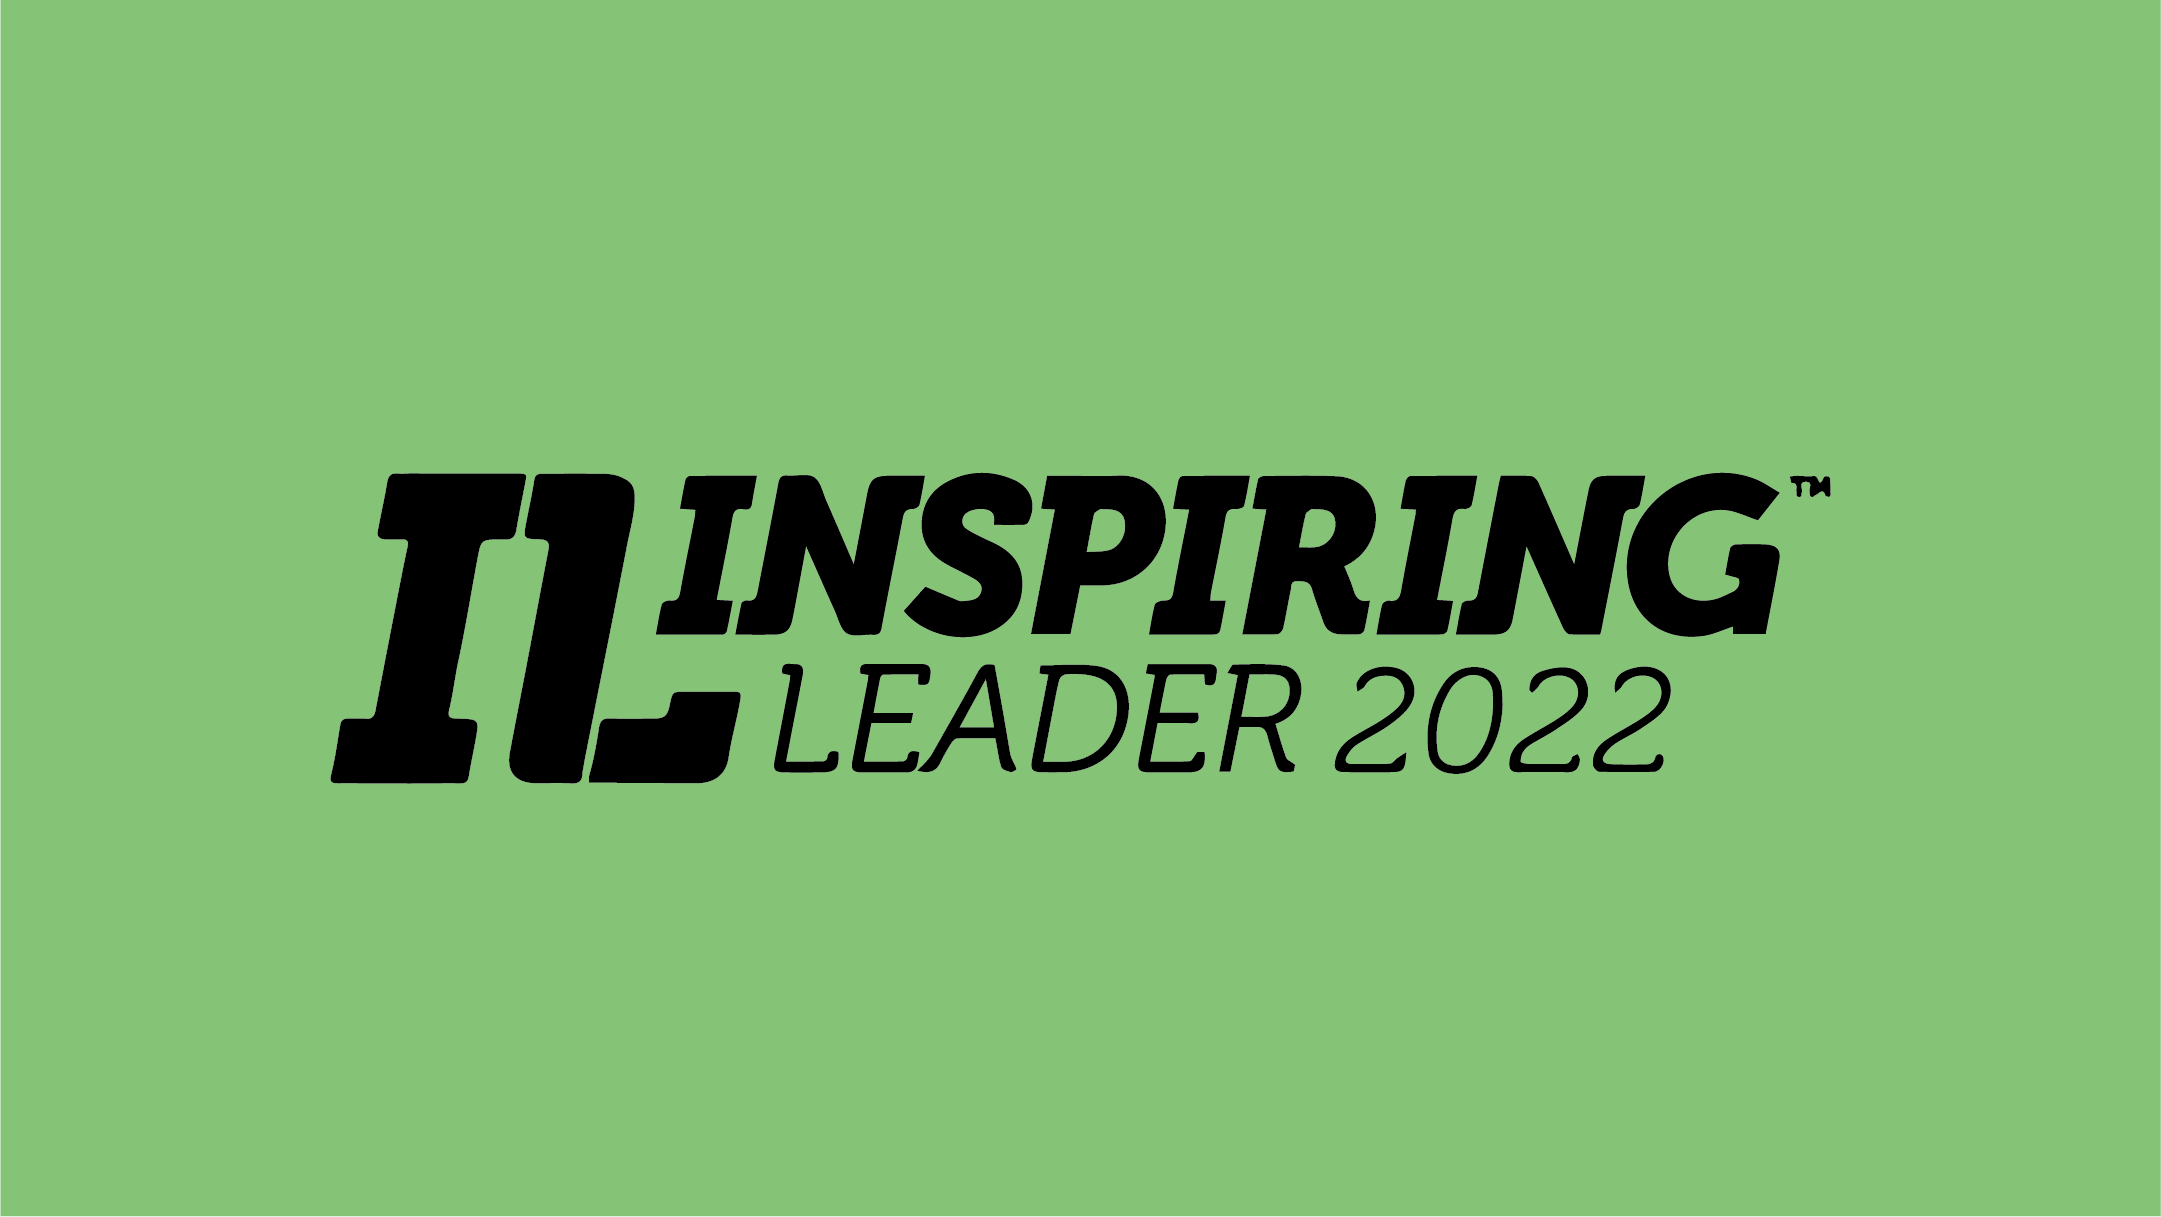 Inspiring Leader Award 2022